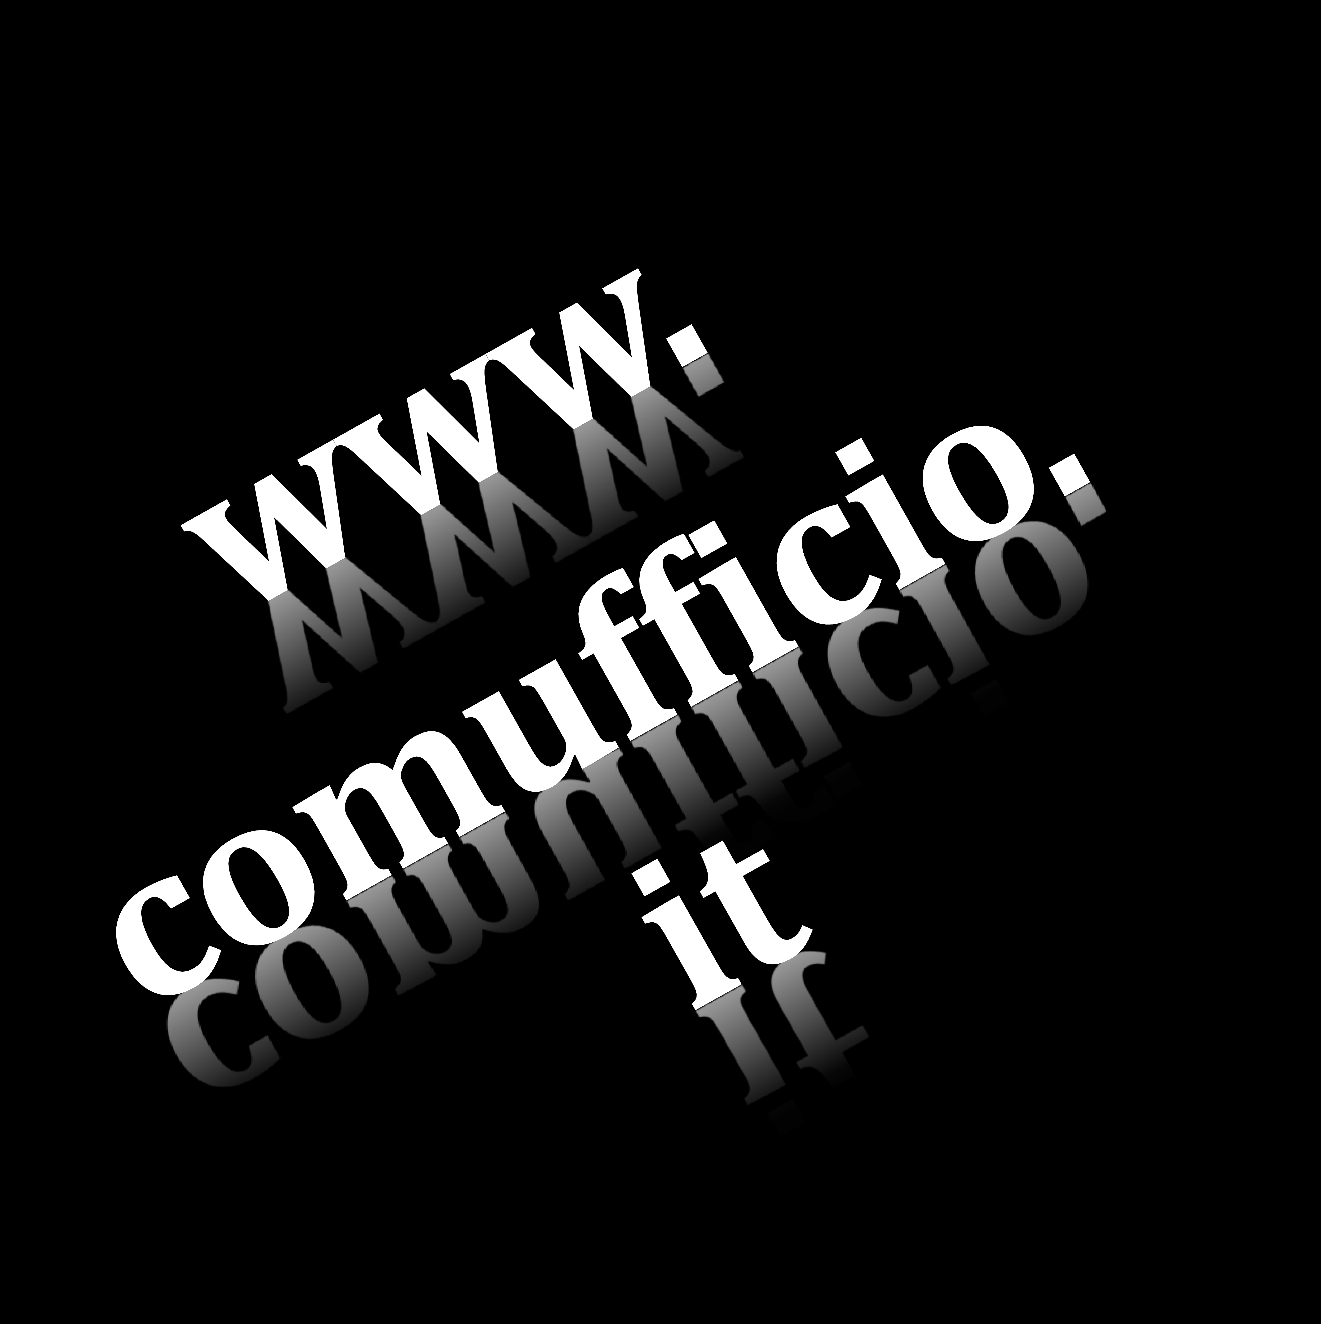 1992-2015 COMUFFICIO Viene introdotto il 4 logo SMAU si apre al pubblico Inizia la Presidenza Schianchi Azioni per la difesa della fiscalità Nuovo sito internet Comufficio si «stacca» da SMAU